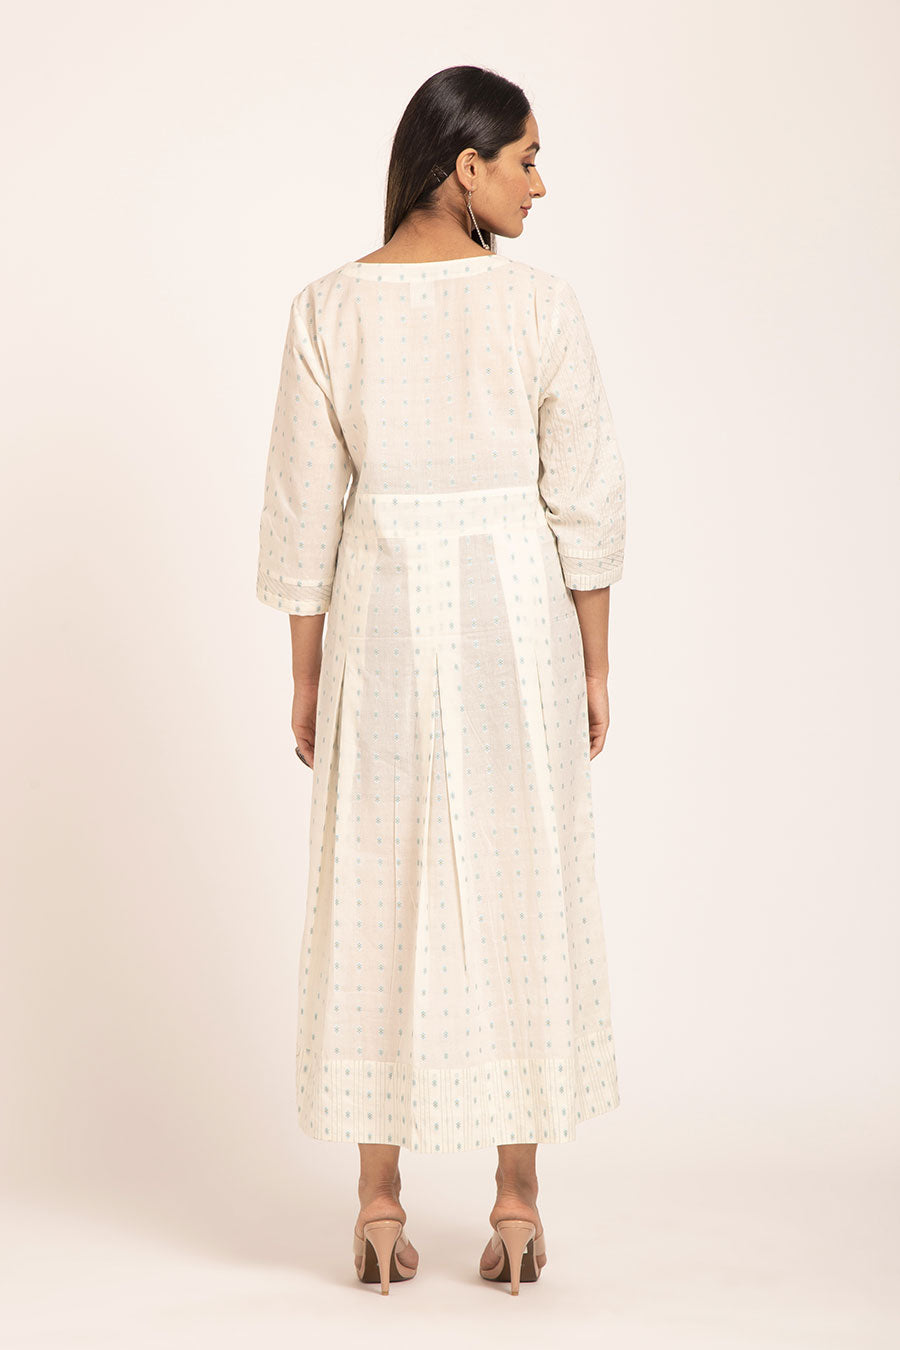 Peonies - White Pleated Midi Dress